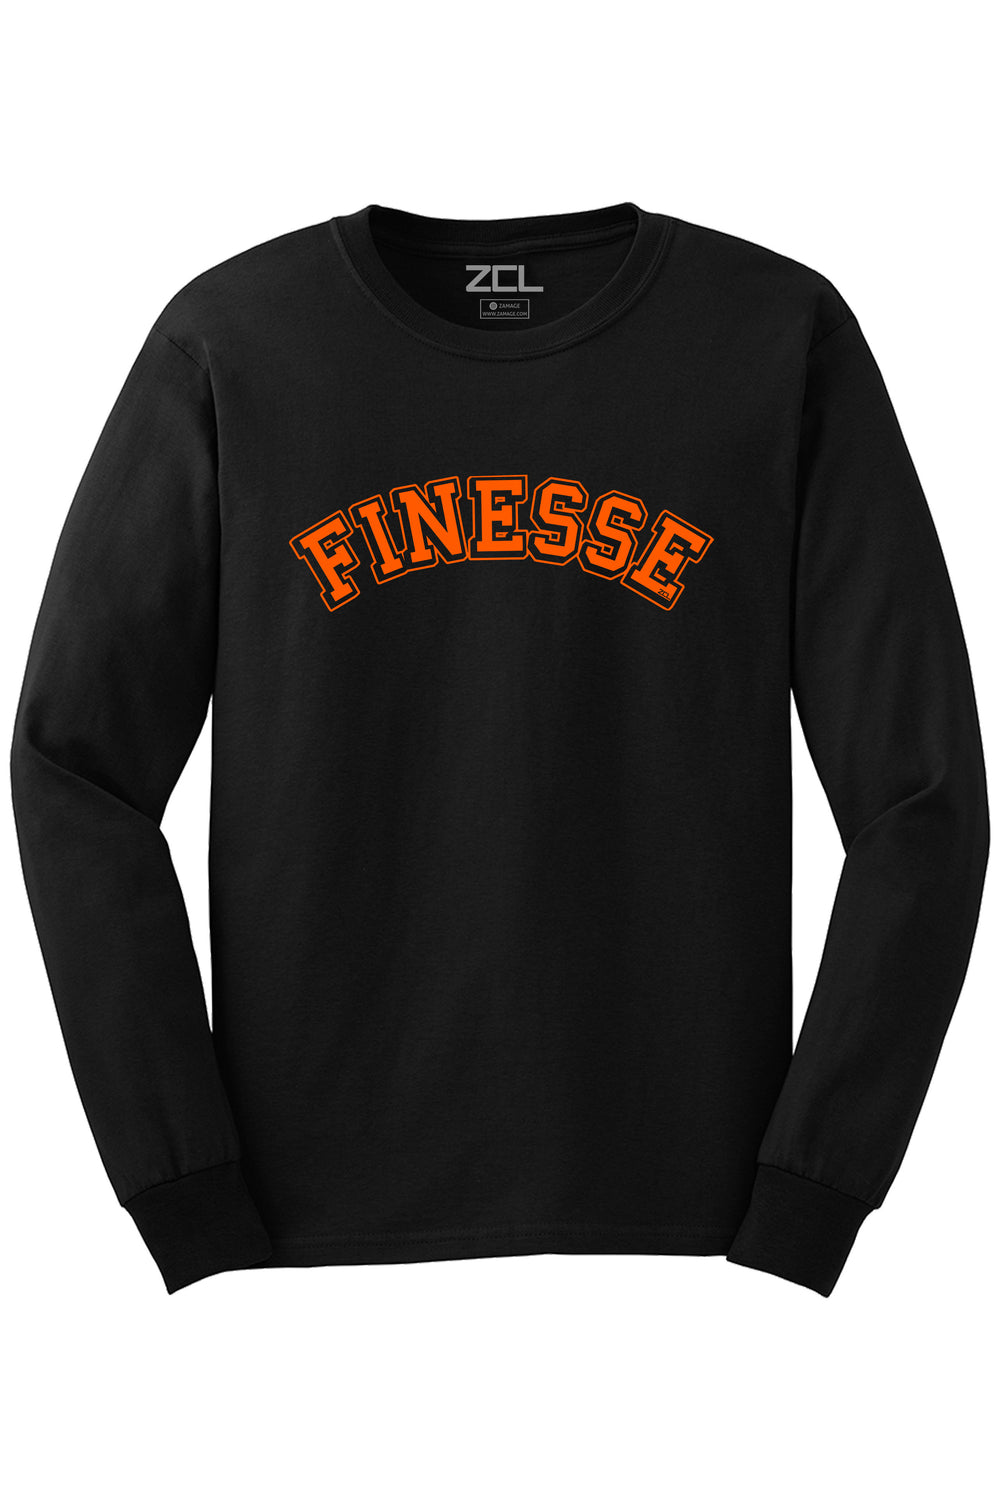 Finesse Long Sleeve Tee (Orange Logo) - Zamage